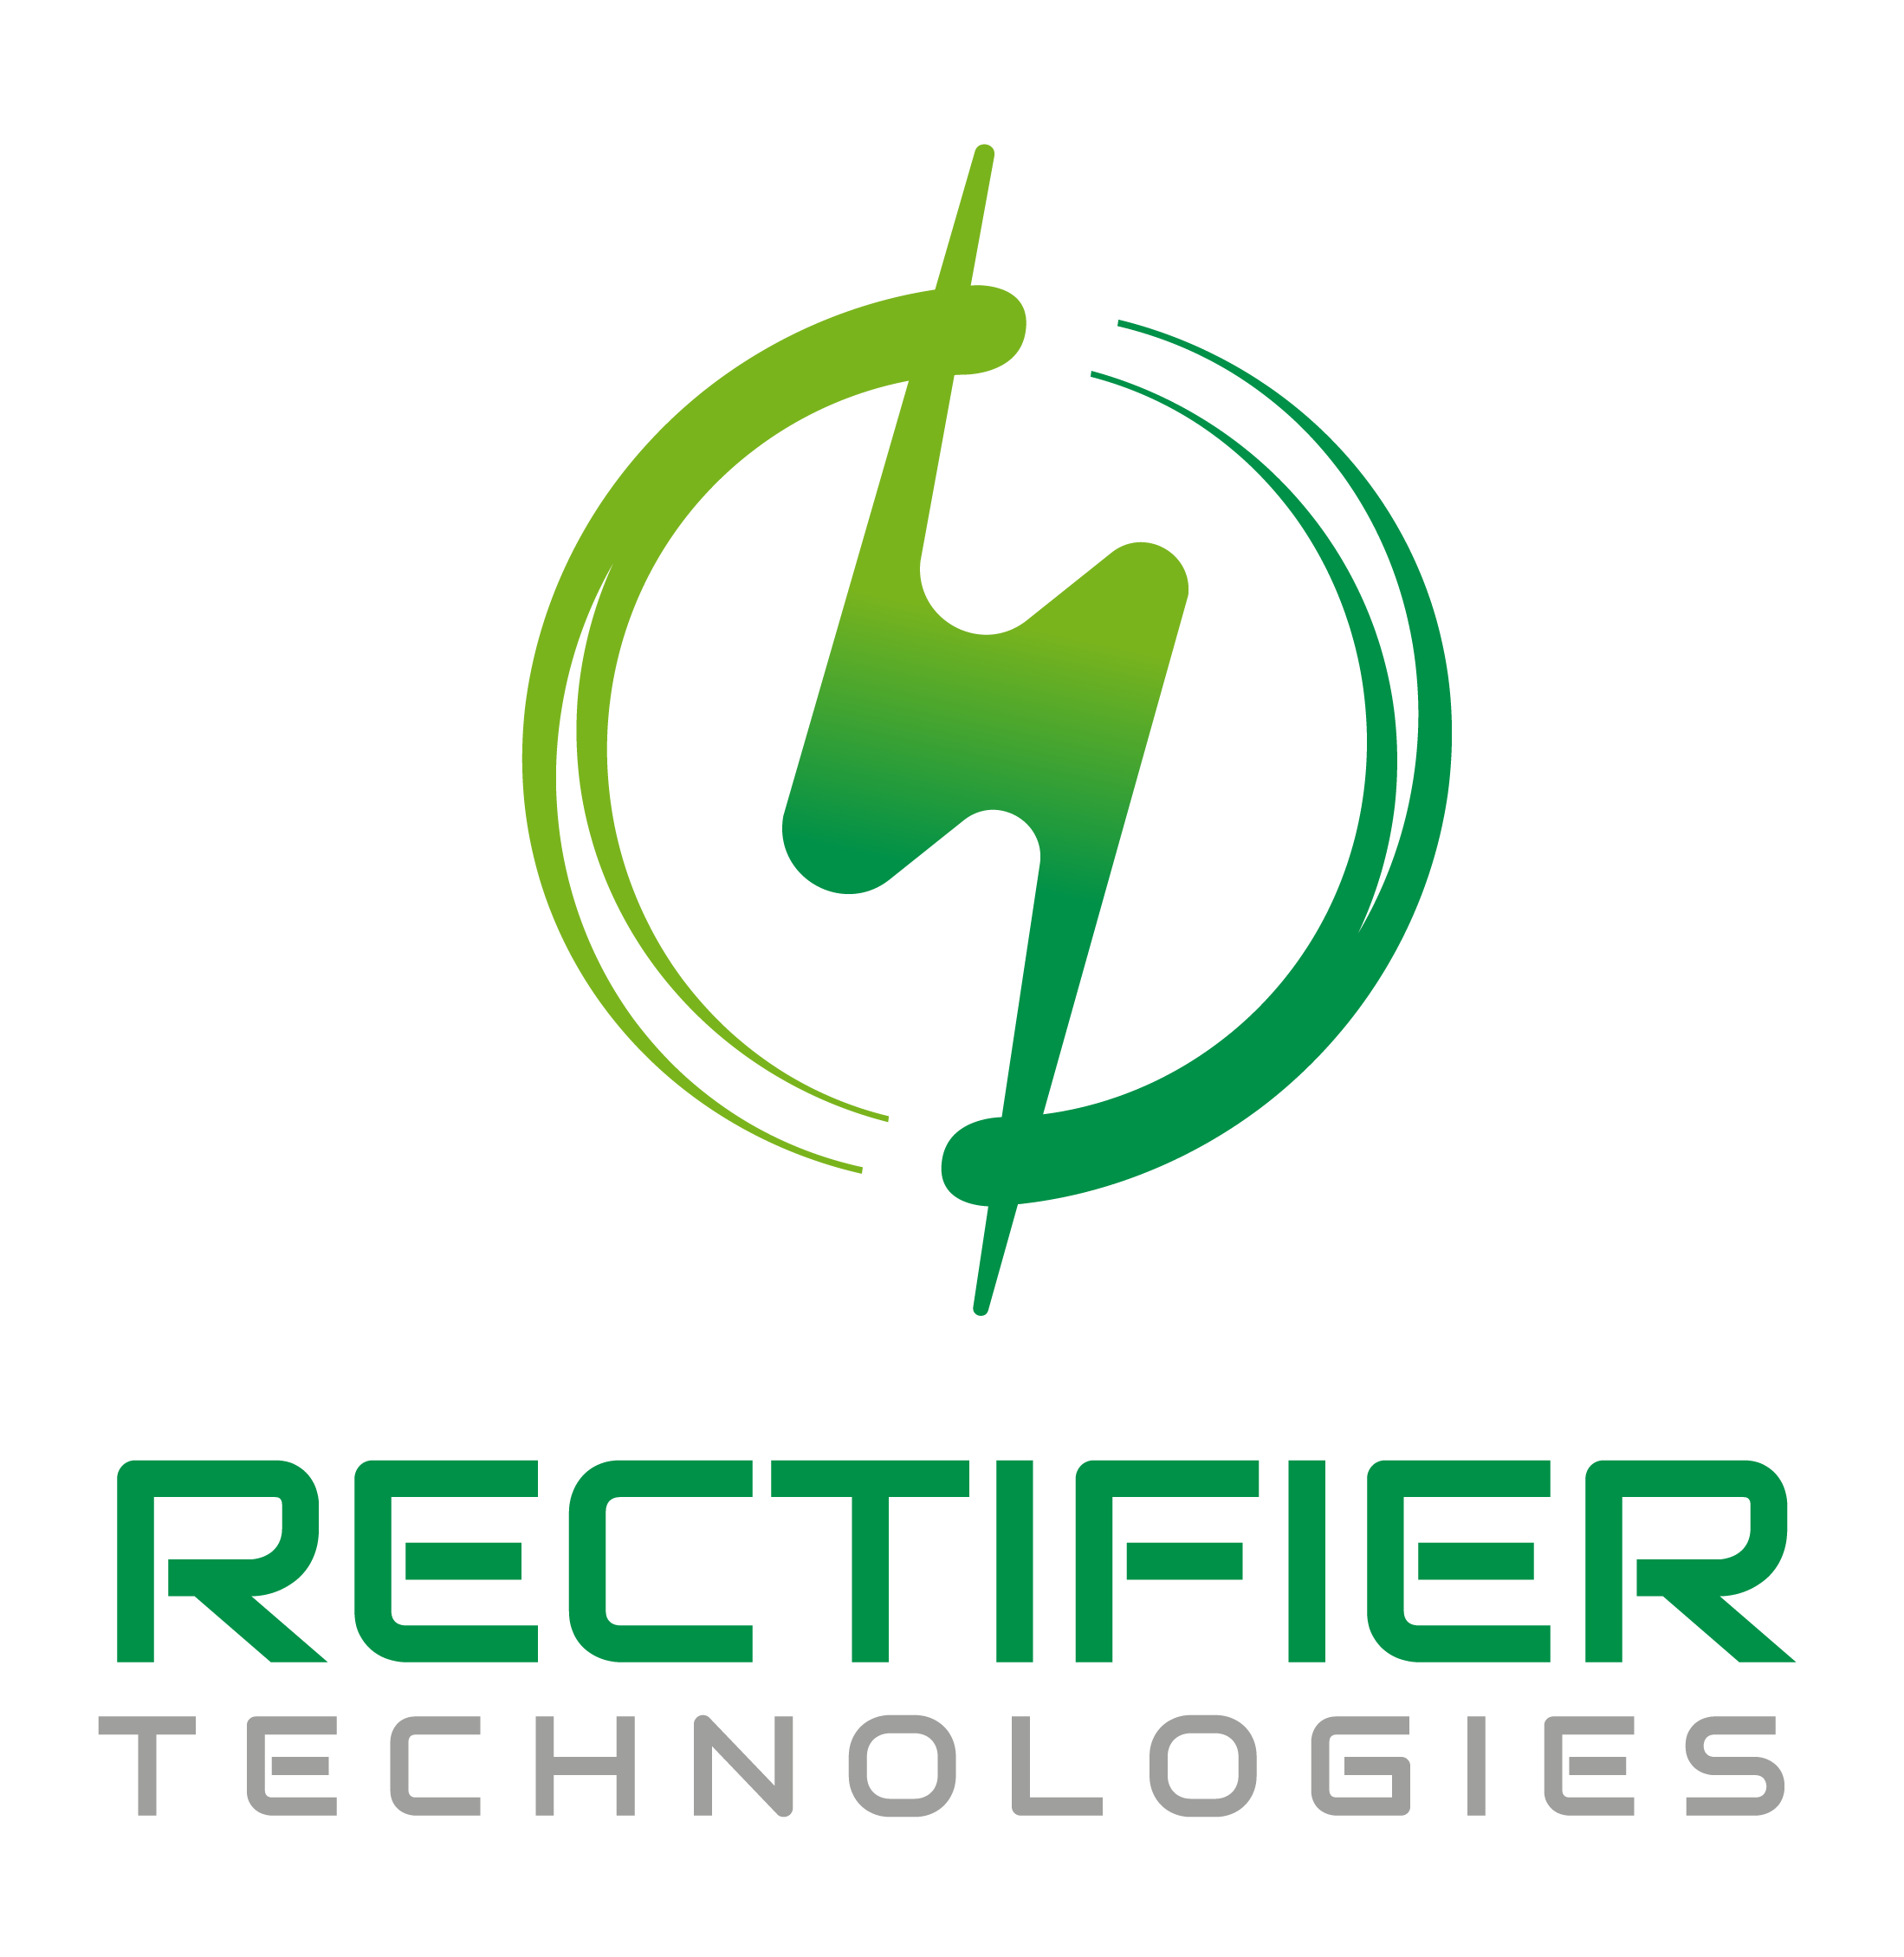 Rectifier Technologies